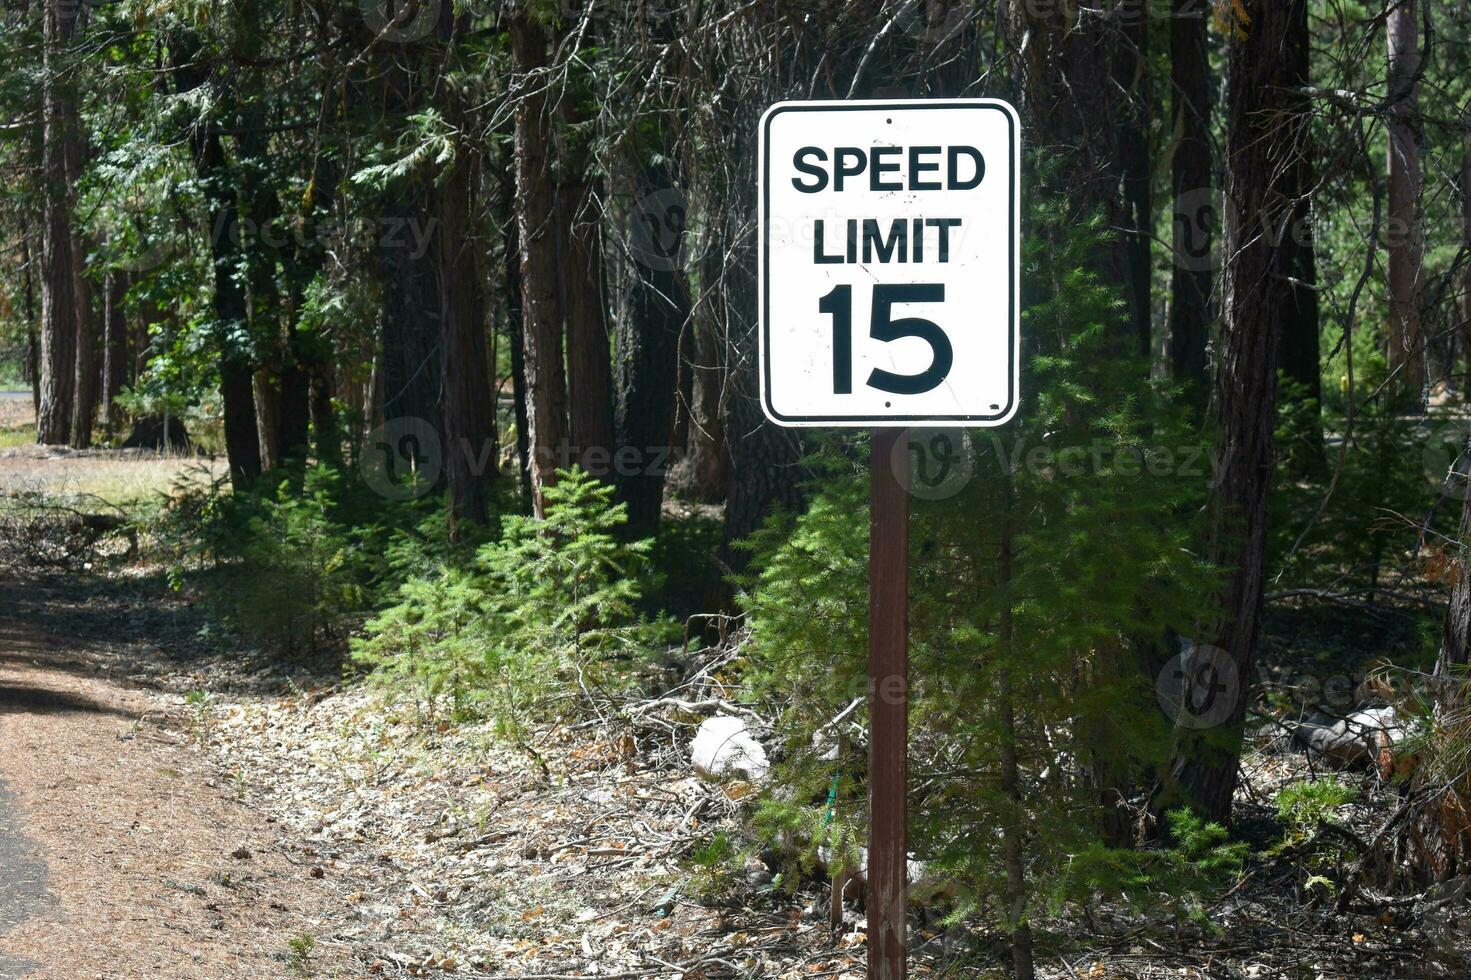 velocidad límite firmar 15 en bosque foto